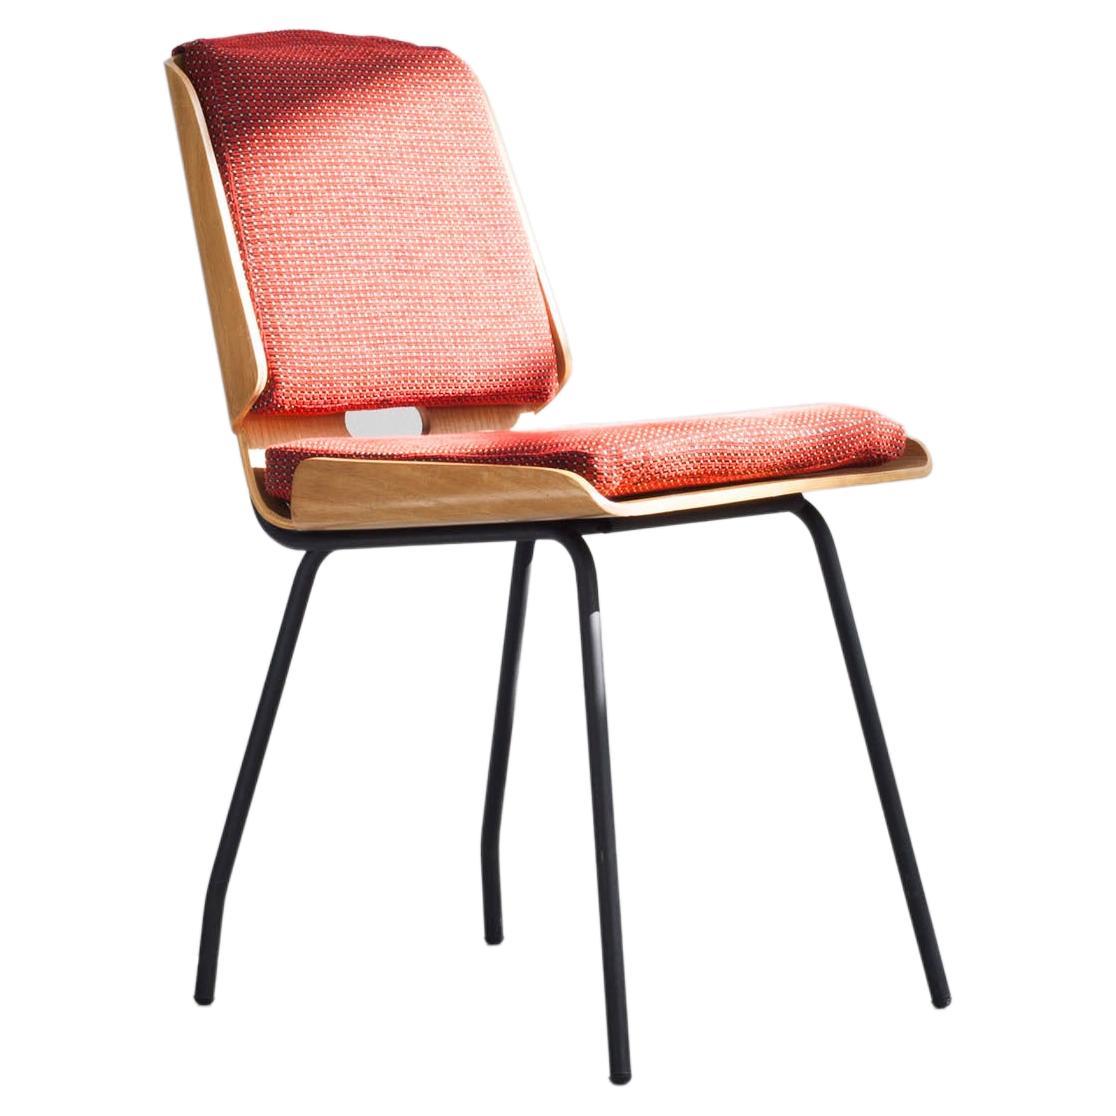  Von Giancarlo De Carlo entworfen und 1954 von Arflex hergestellter Stuhl.